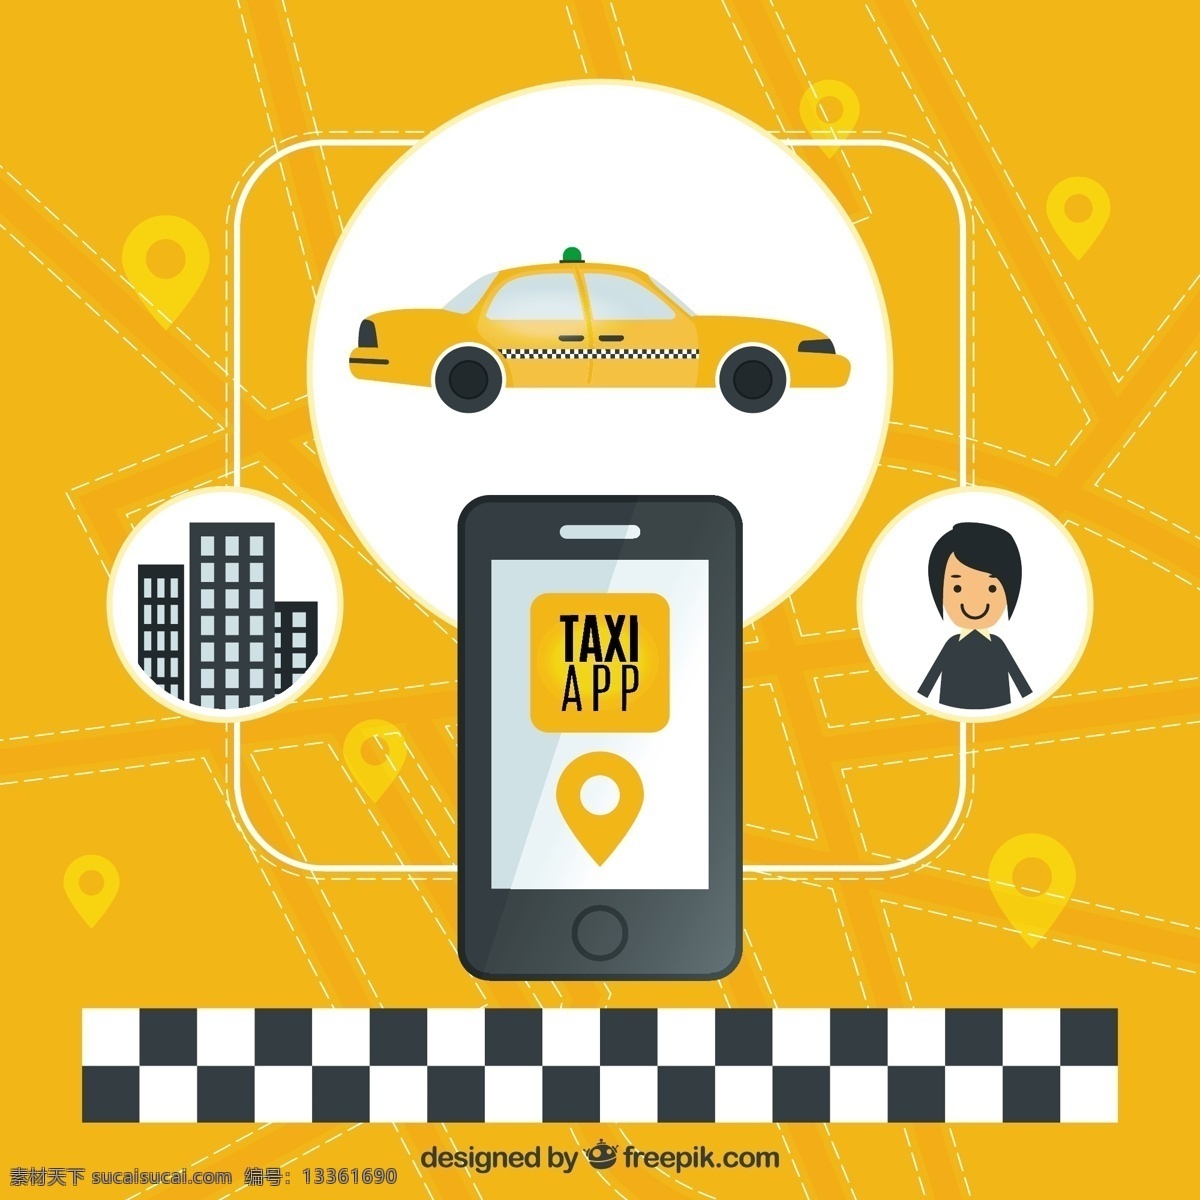 出租车 应用 黄色 背景 汽车 旅行 技术 移动 运输 应用程序 图表 技术背景 服务 城市 交通 全球定位系统 交通运输 移动应用 车辆